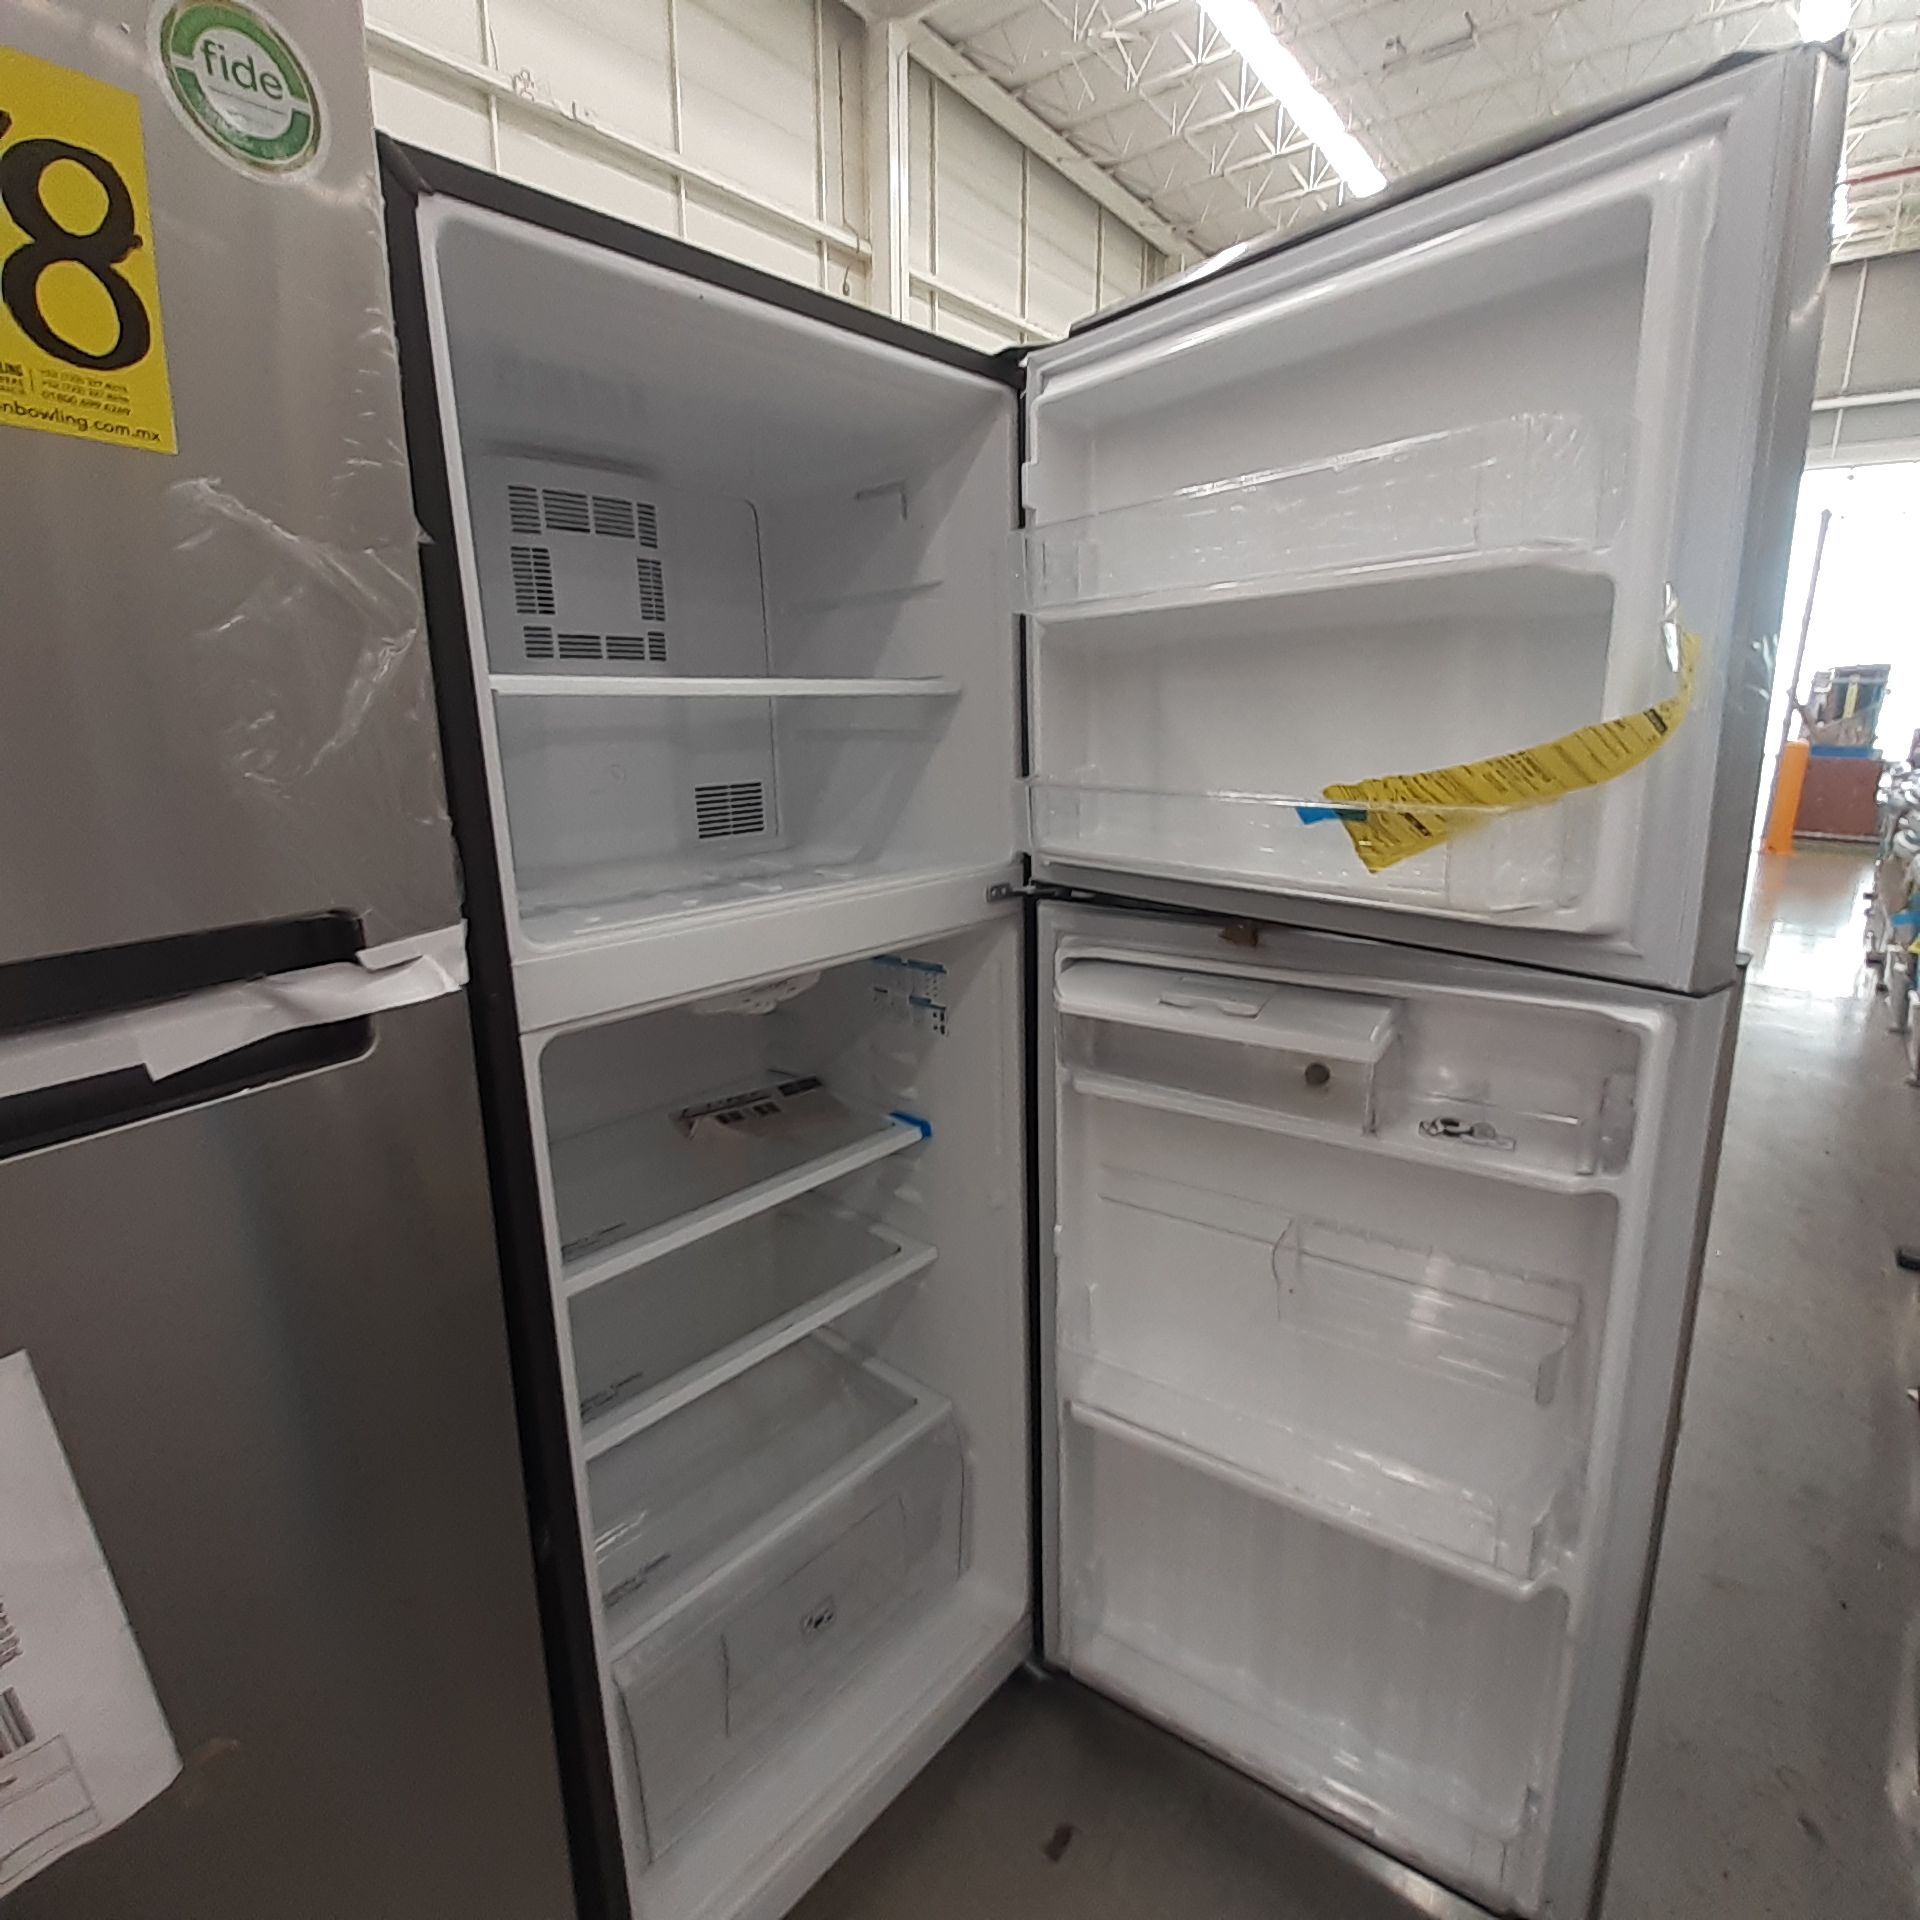 Lote De 3 Refrigeradores: 1 Refrigerador Marca Whirlpool, 1 Refrigerador Marca Mabe, 1 Refrigerador - Image 13 of 22